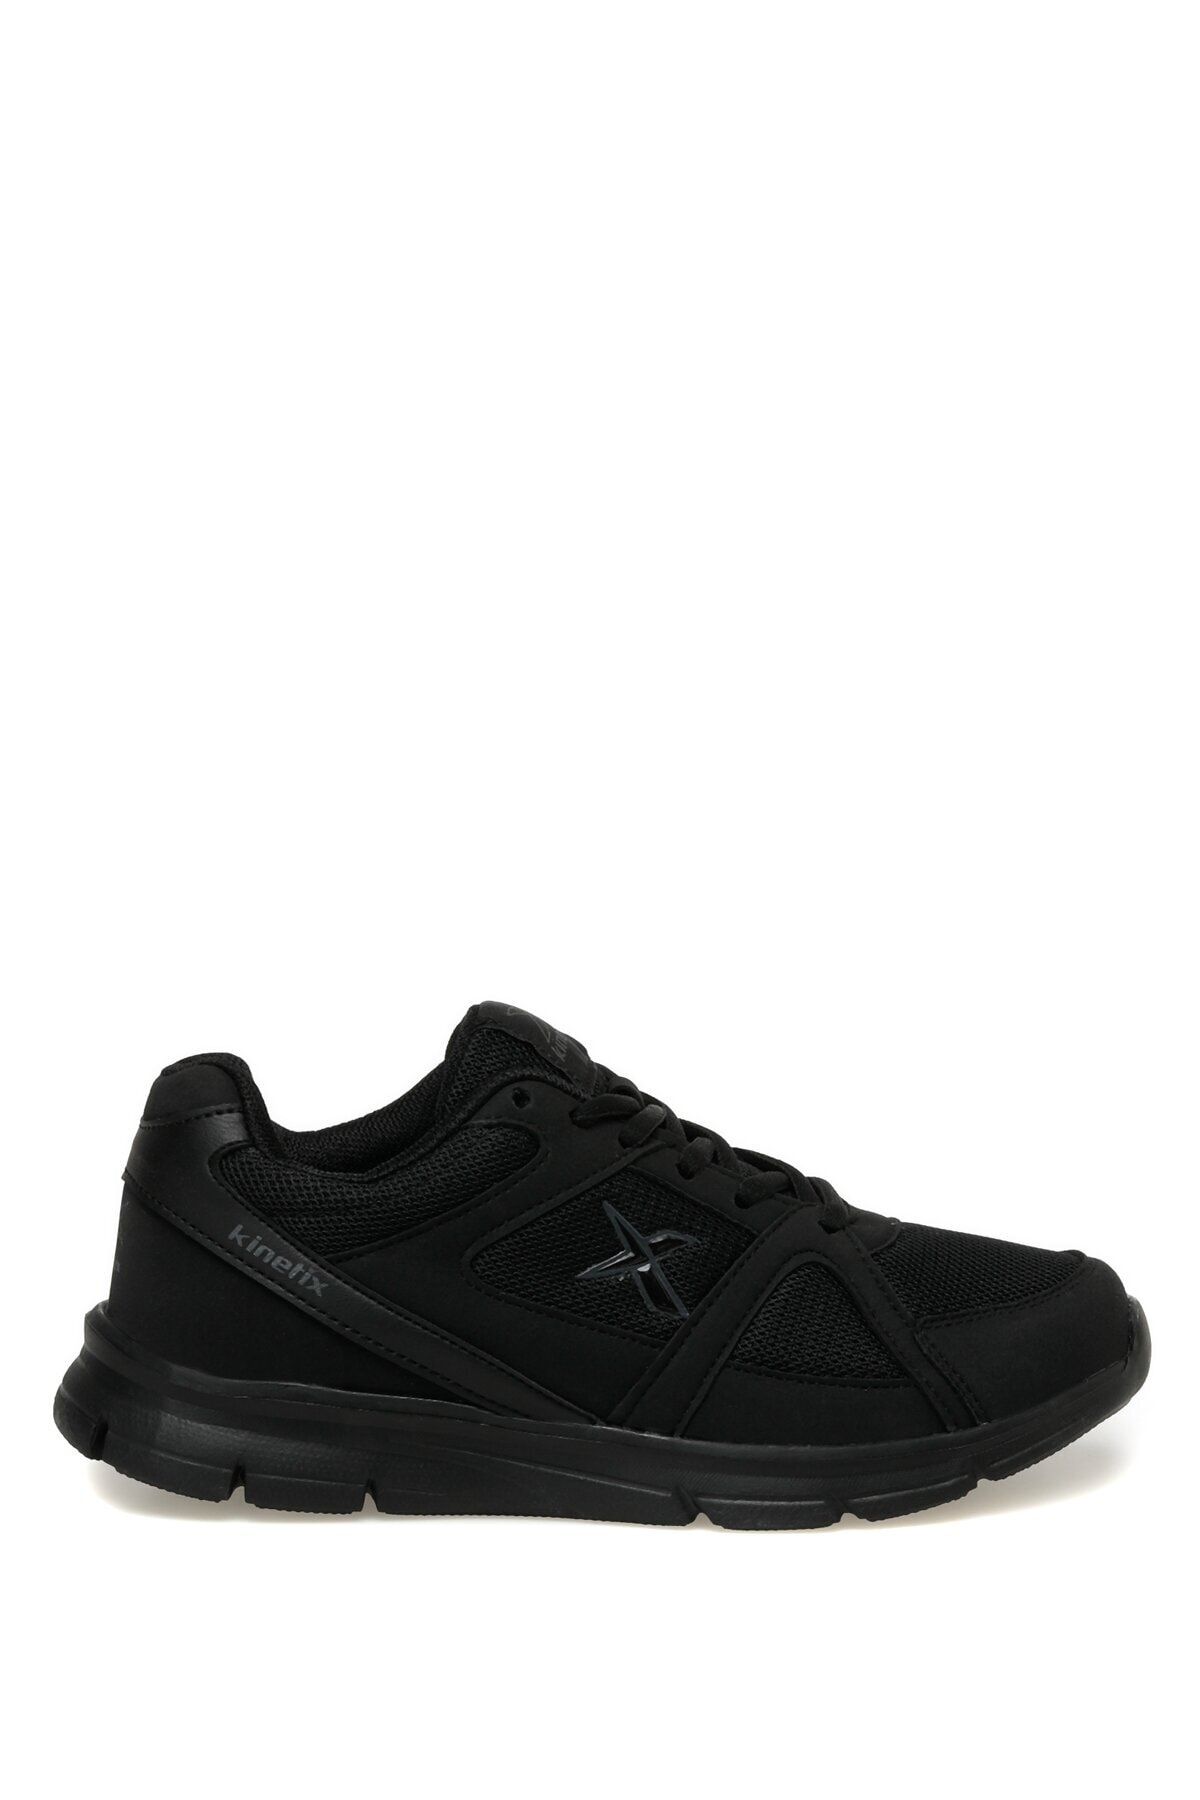 Kinetix Tx 3fx Siyah Unisex Koşu Ayakkabısı